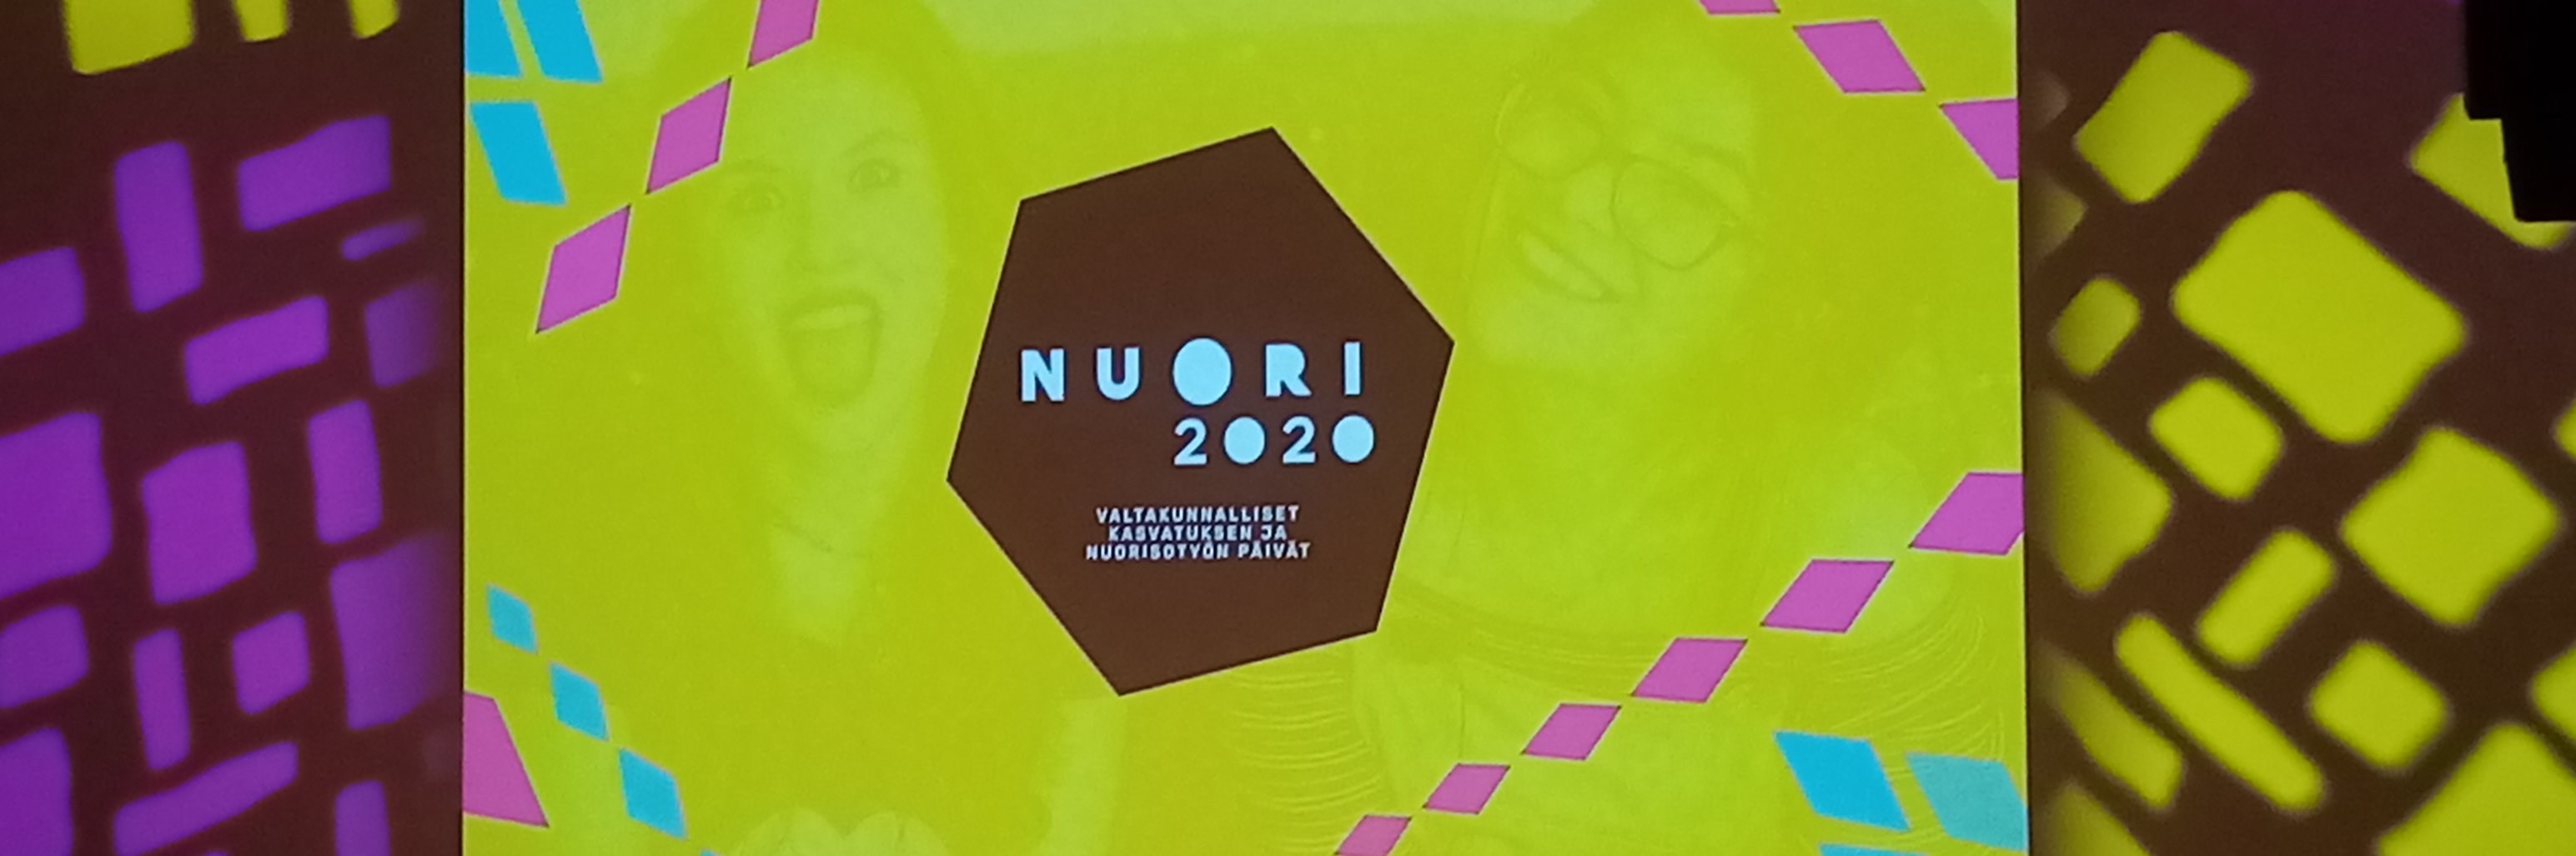 Lava jonka keskellä olevassa näytössä lukee Nuori 2020